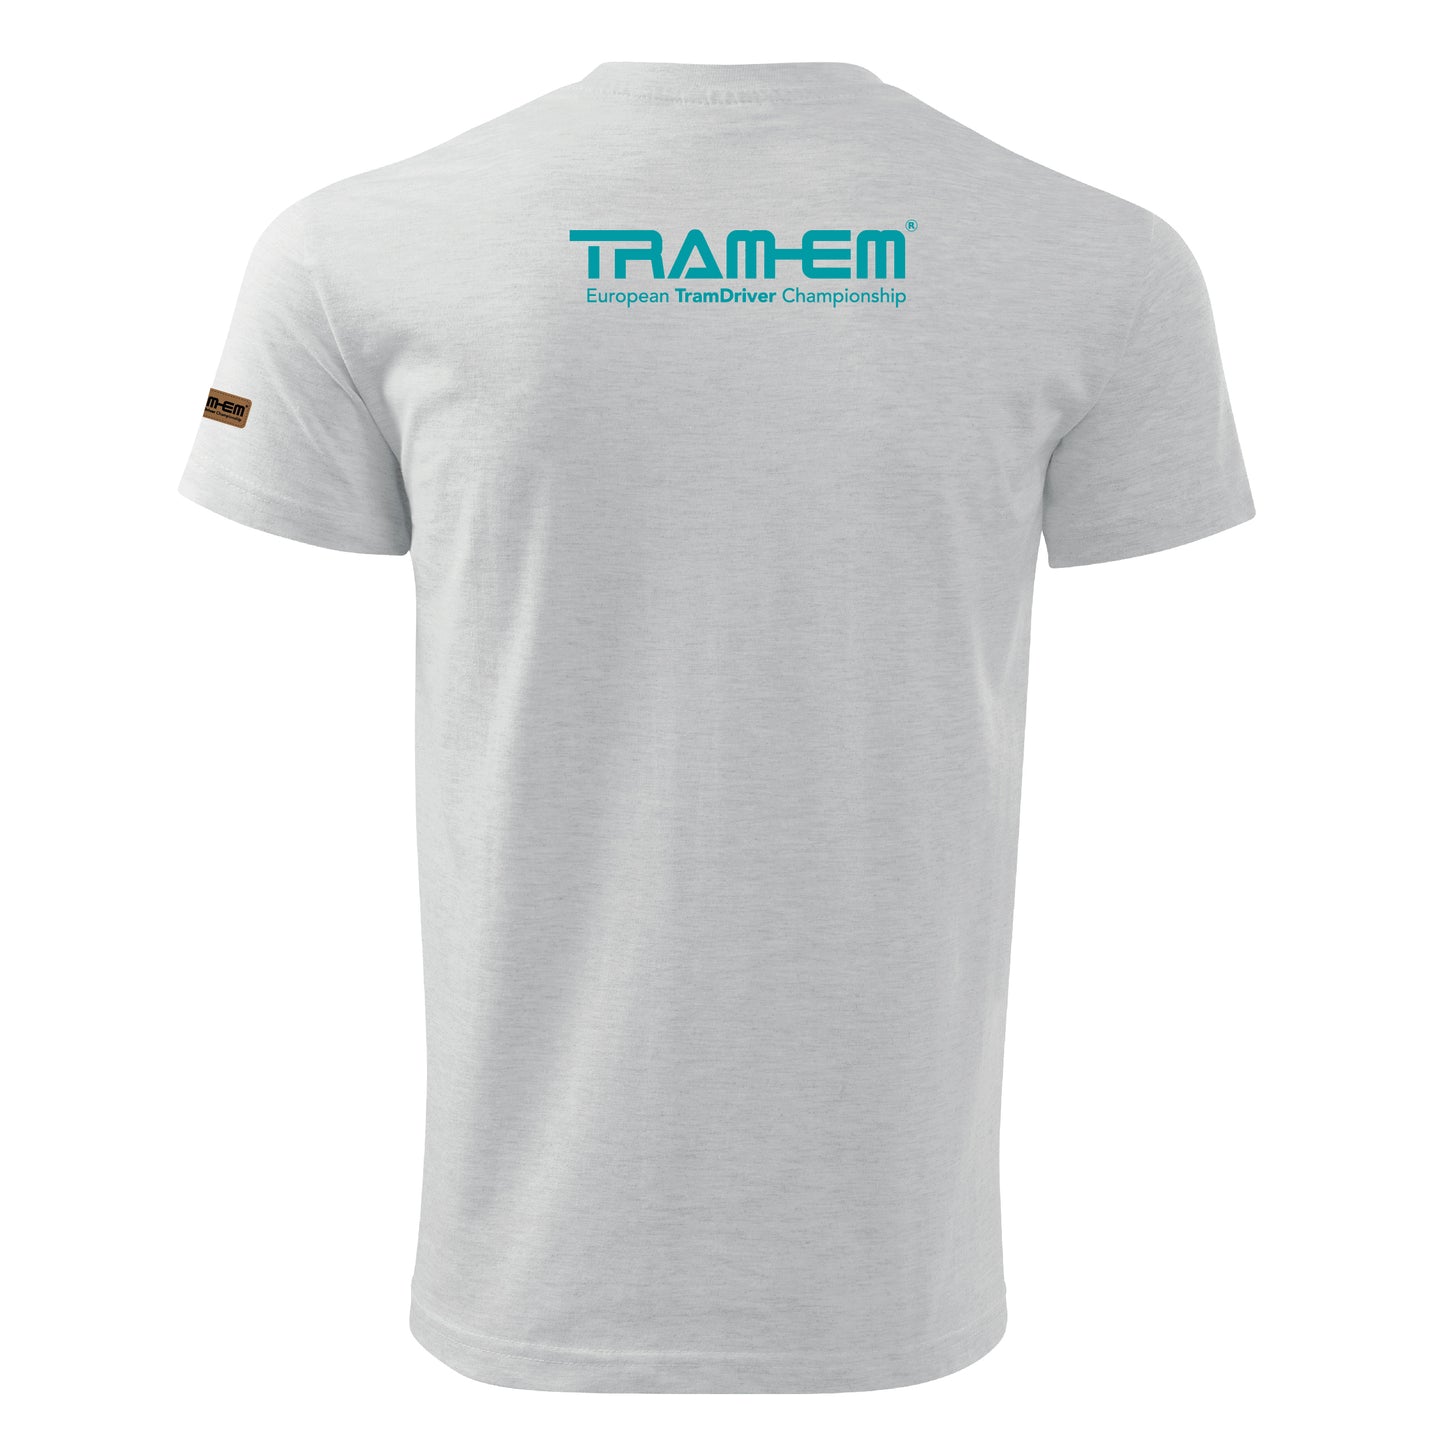 TRAM-EM Frankfurt (Main) 2024 | Basic Unisex T-Shirt